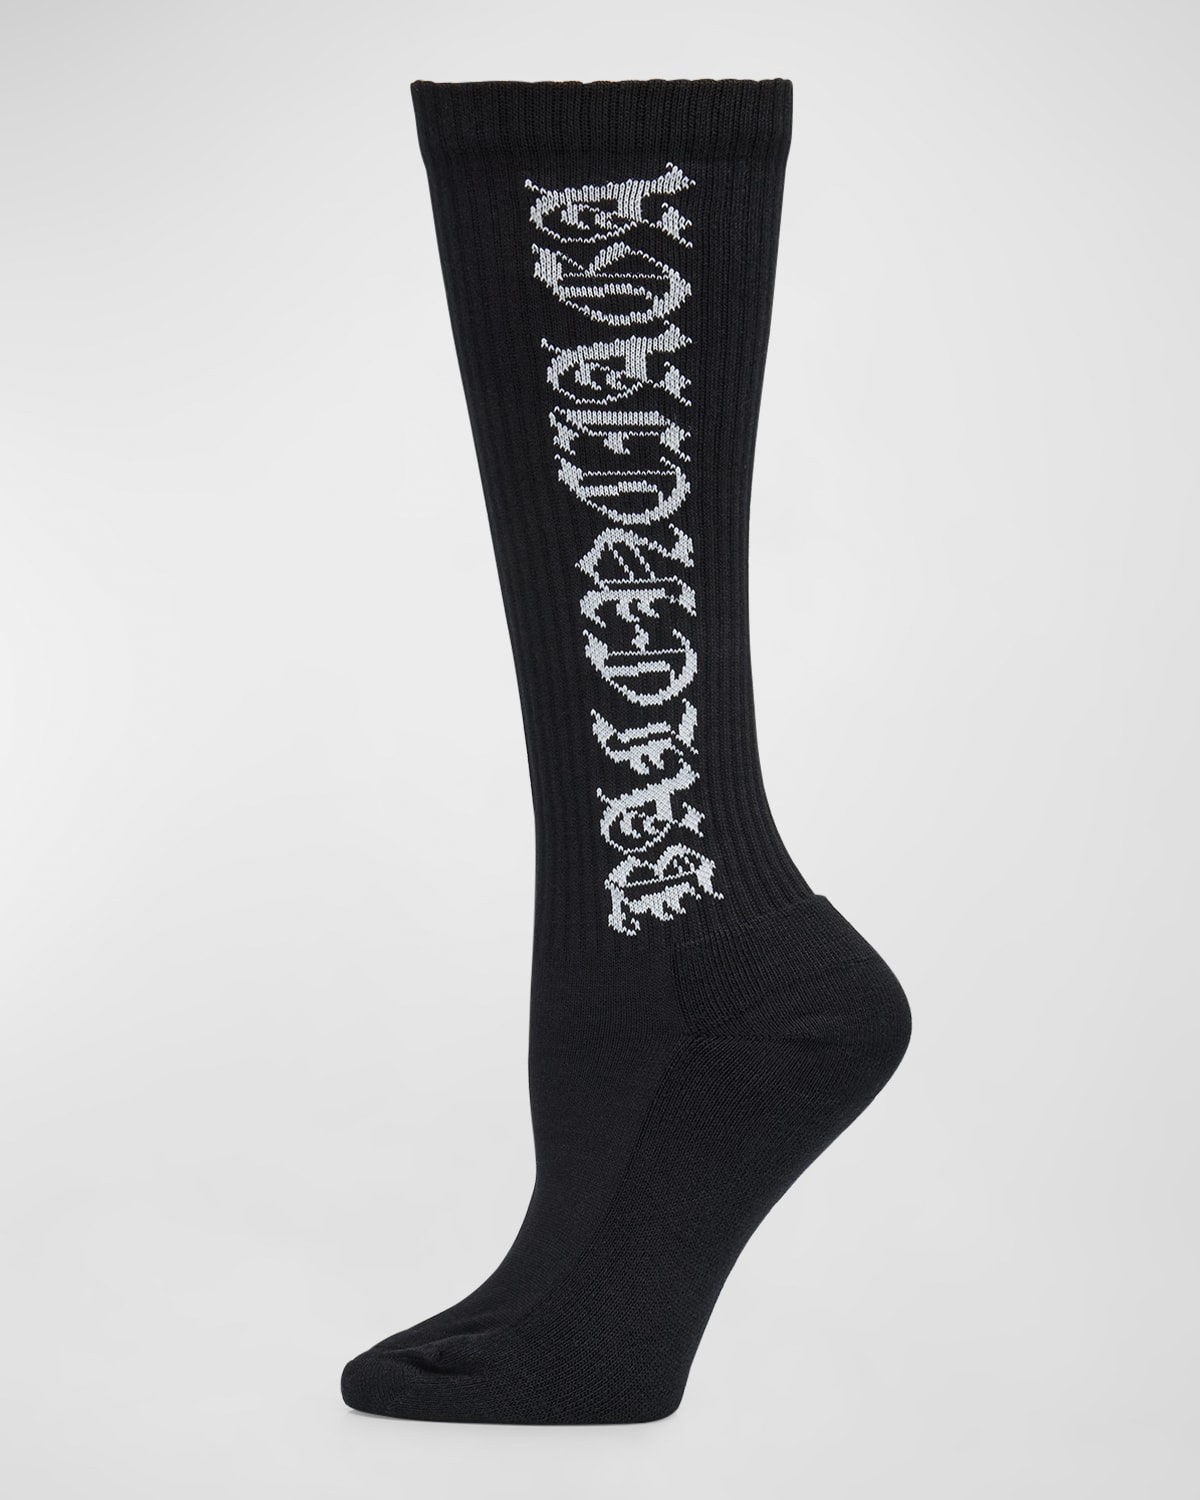 Gothic Type Socks